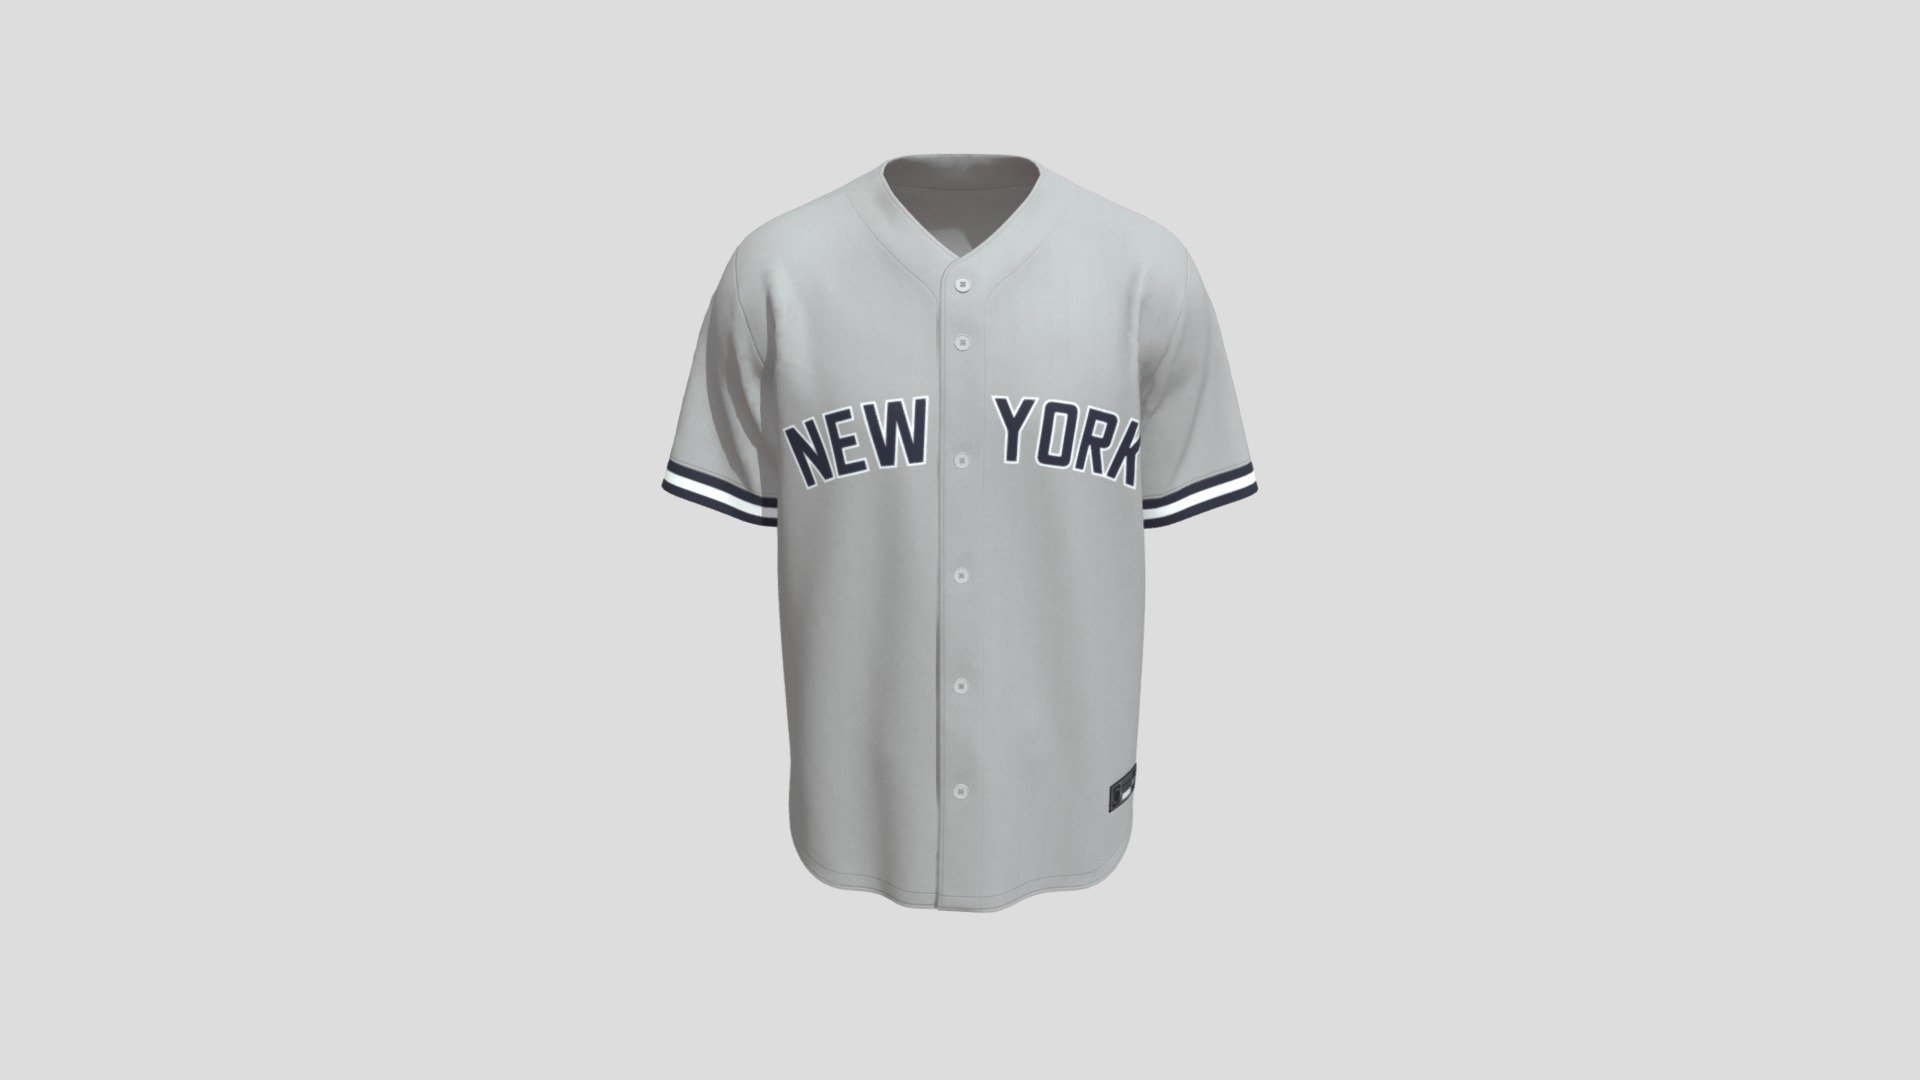 ArtStation - Shirt Design - Baseball